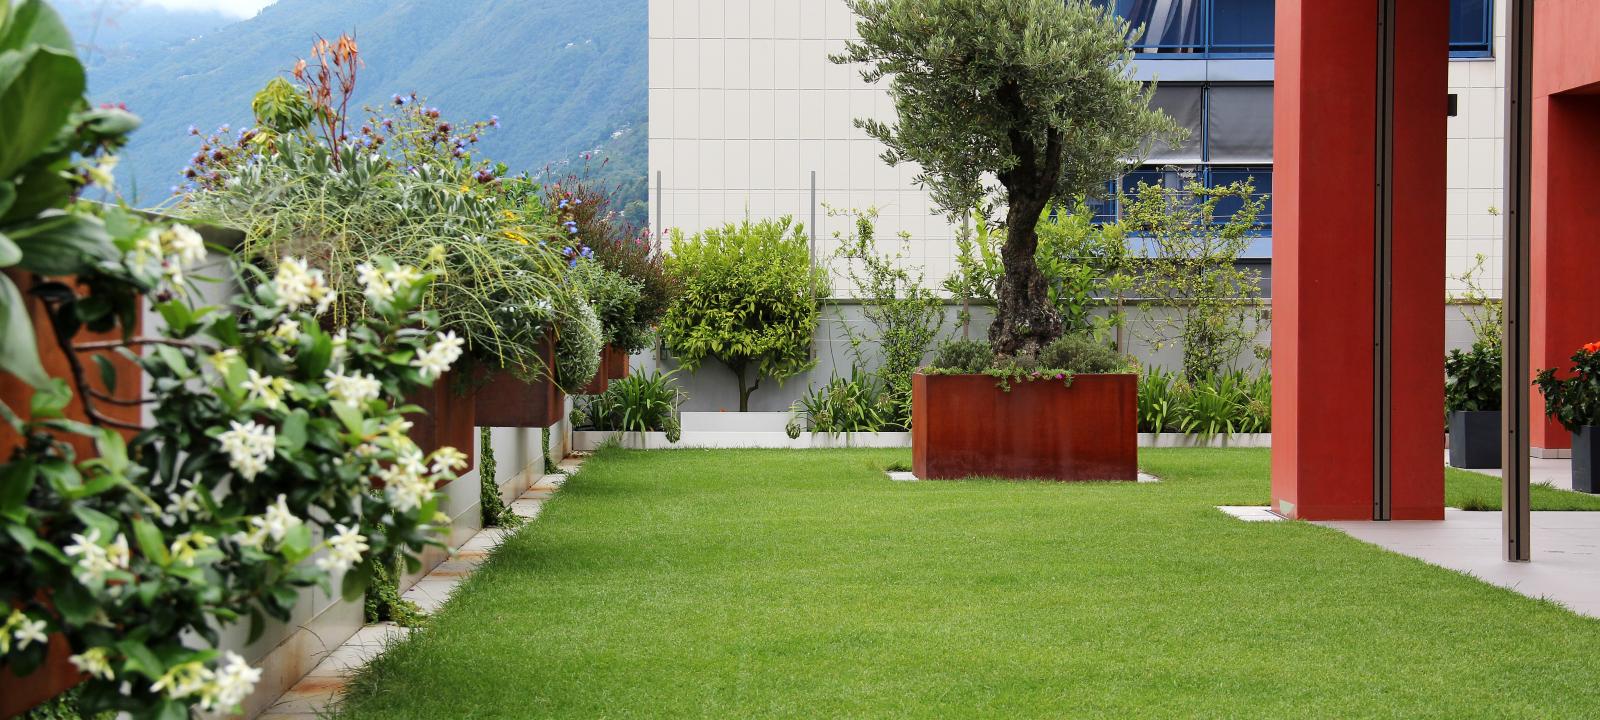 Cubierta jardín con césped y un olivo en una maceta